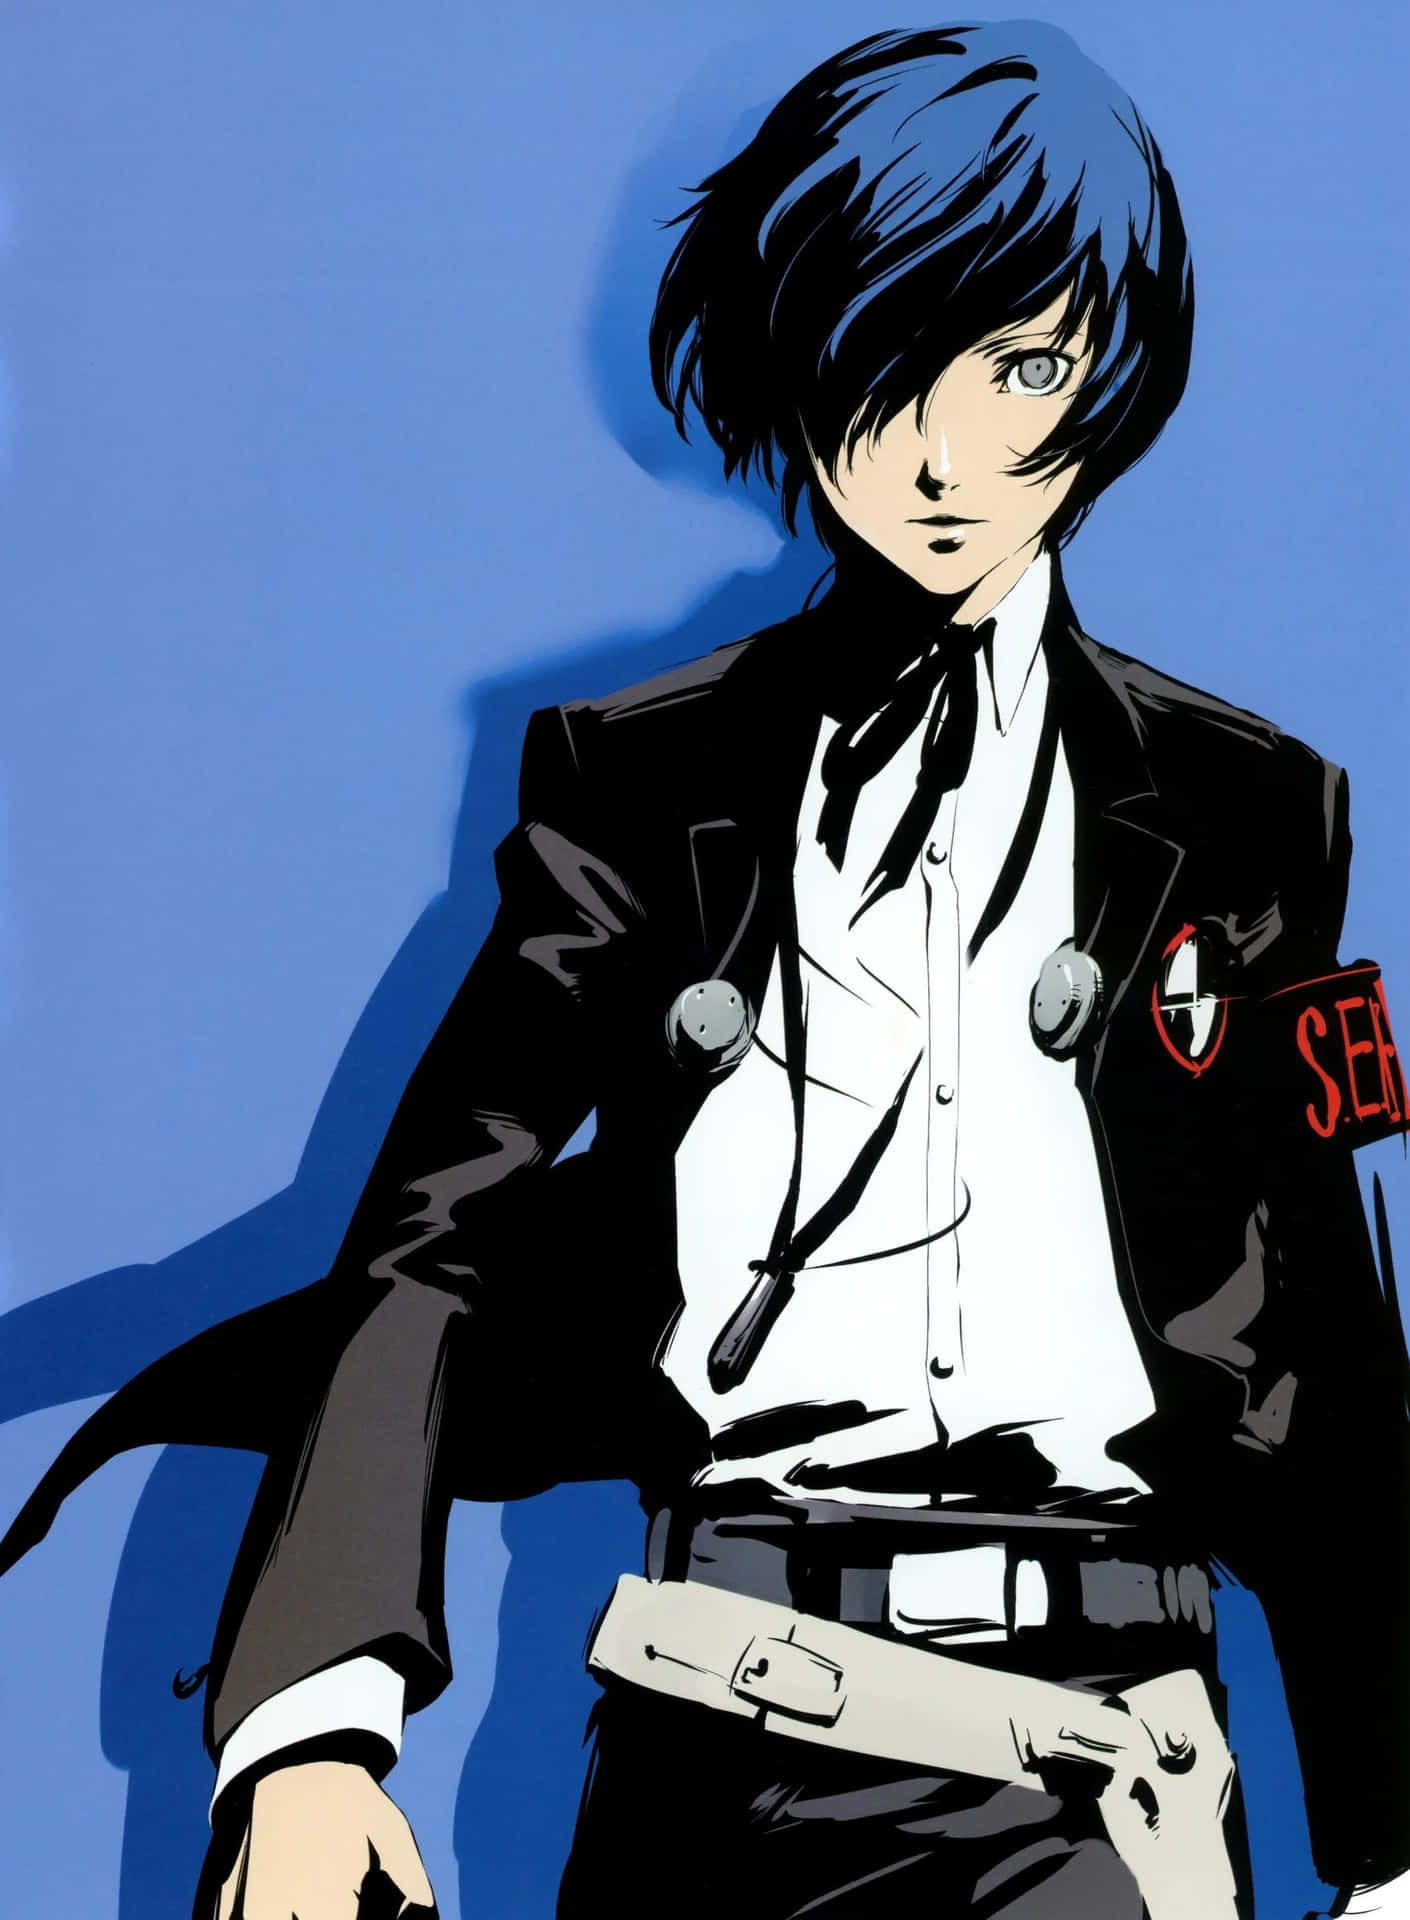 Et billede af den animerede hovedperson fra Persona 3 tapet.